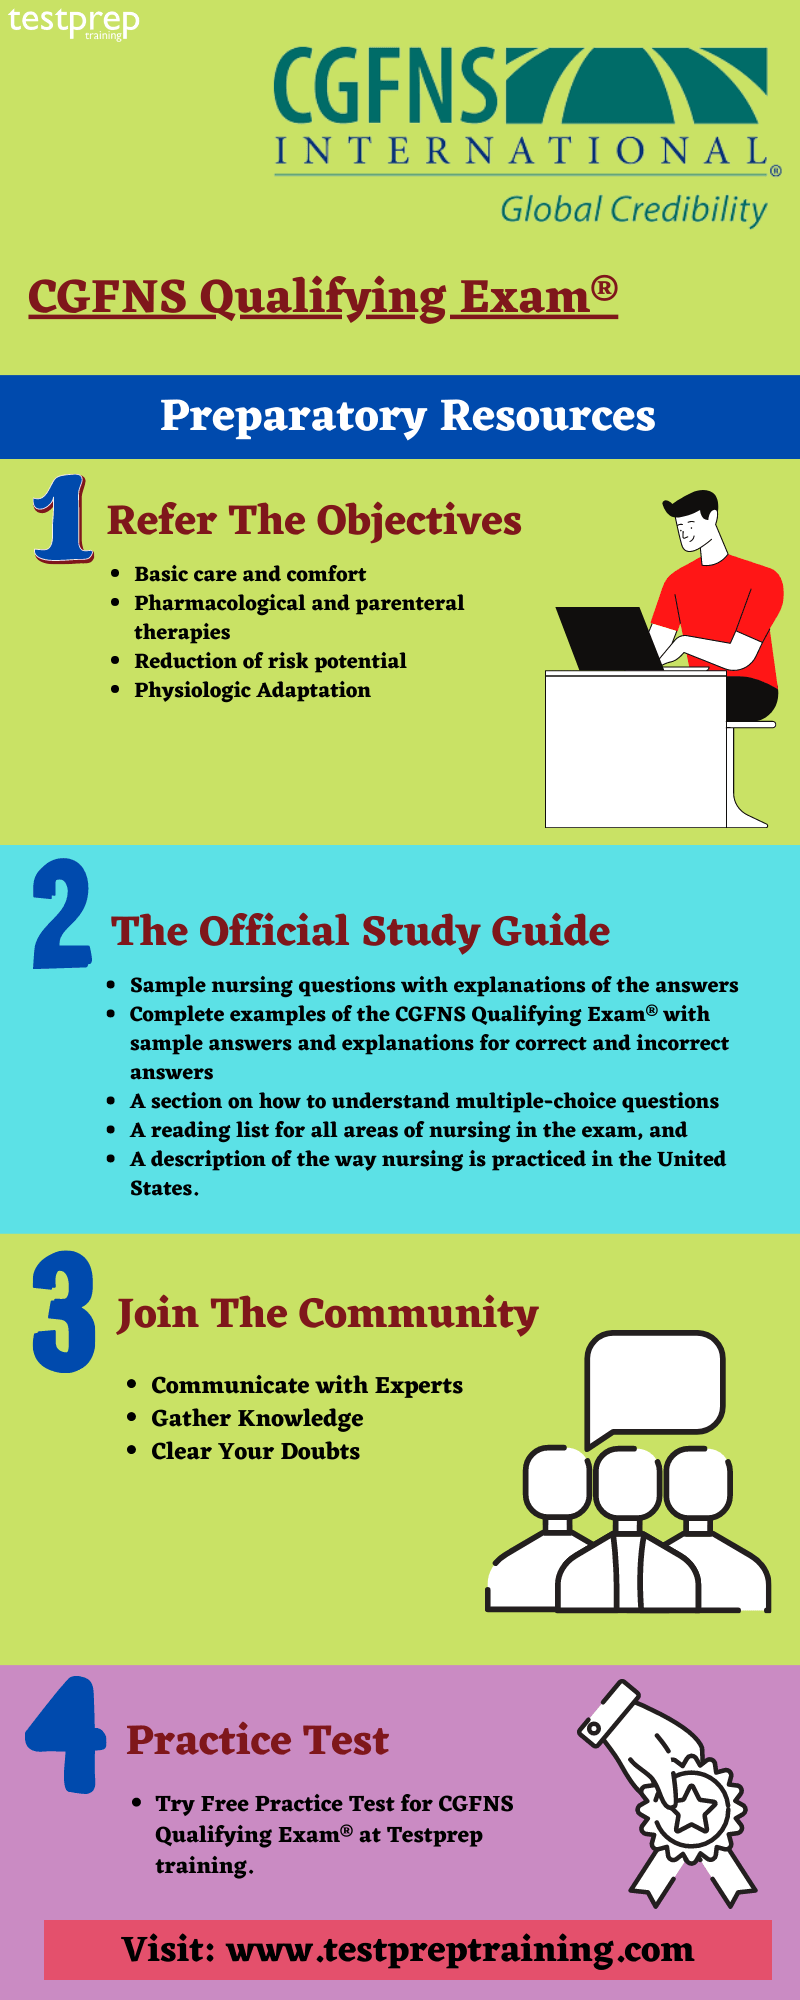 CGFNS Qualifying Exam® preparatory guide 